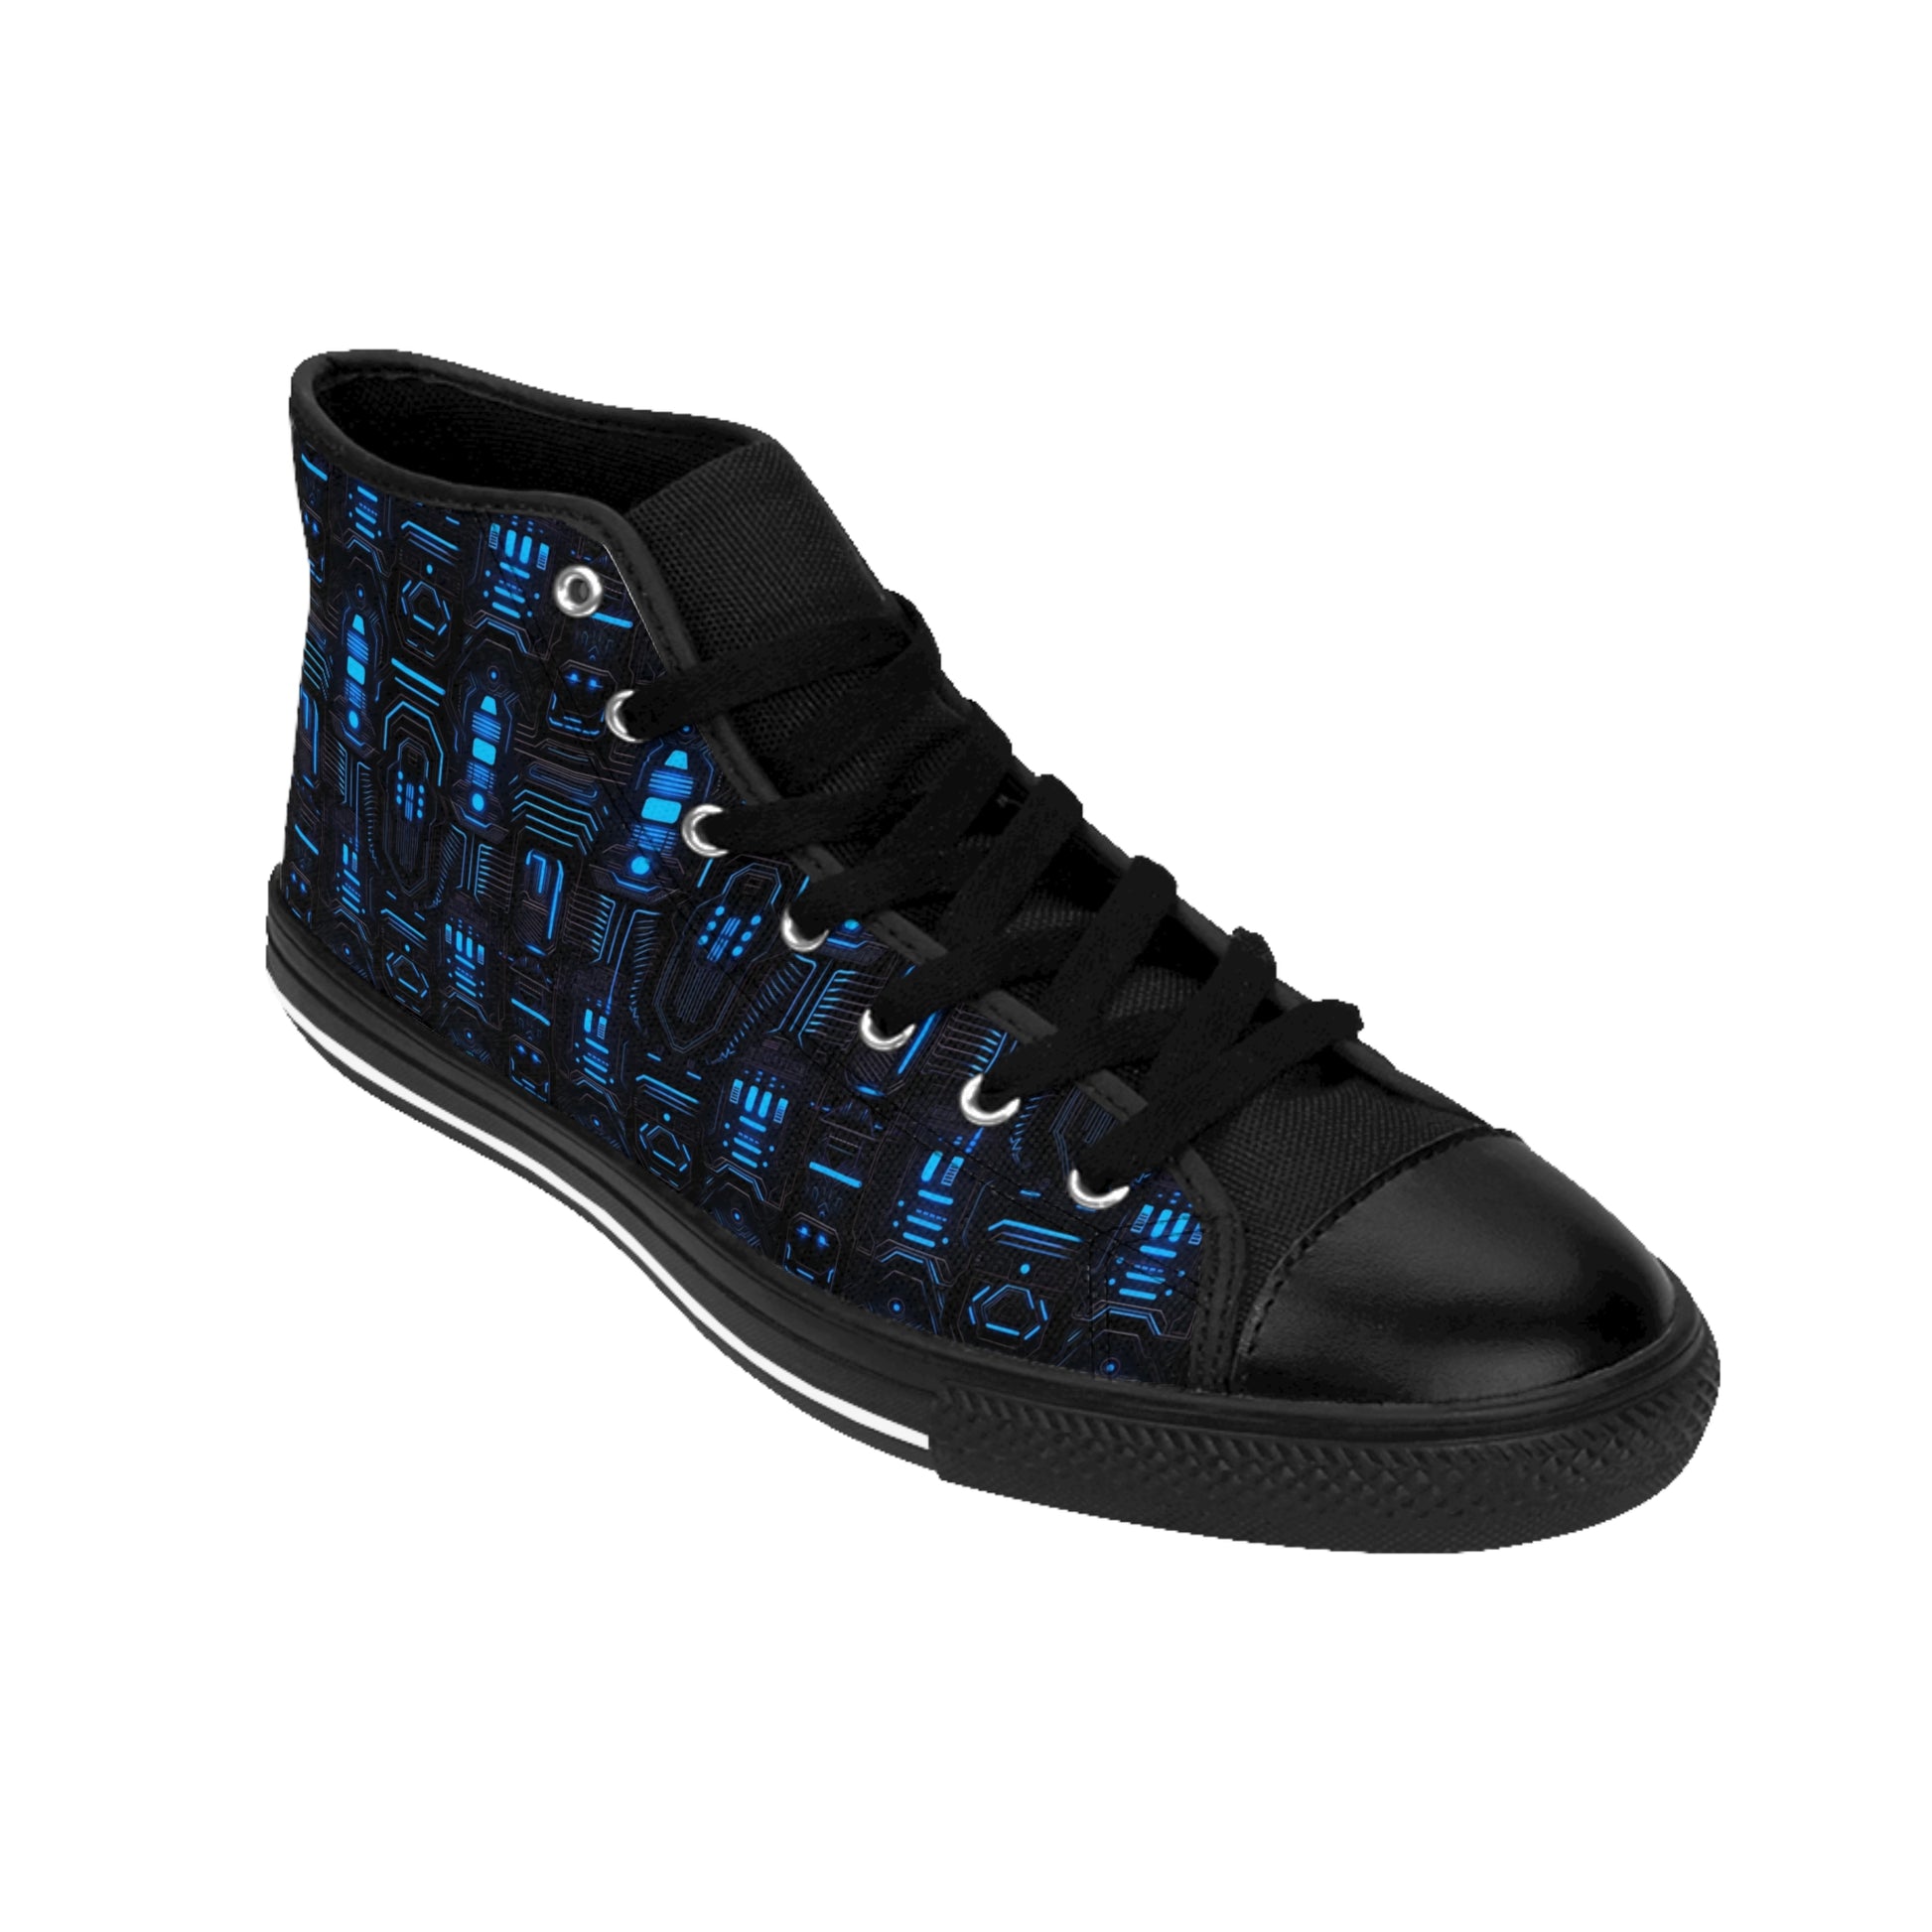 Classic Sneakers Dark Alien Structures in Blue - Frogos Design